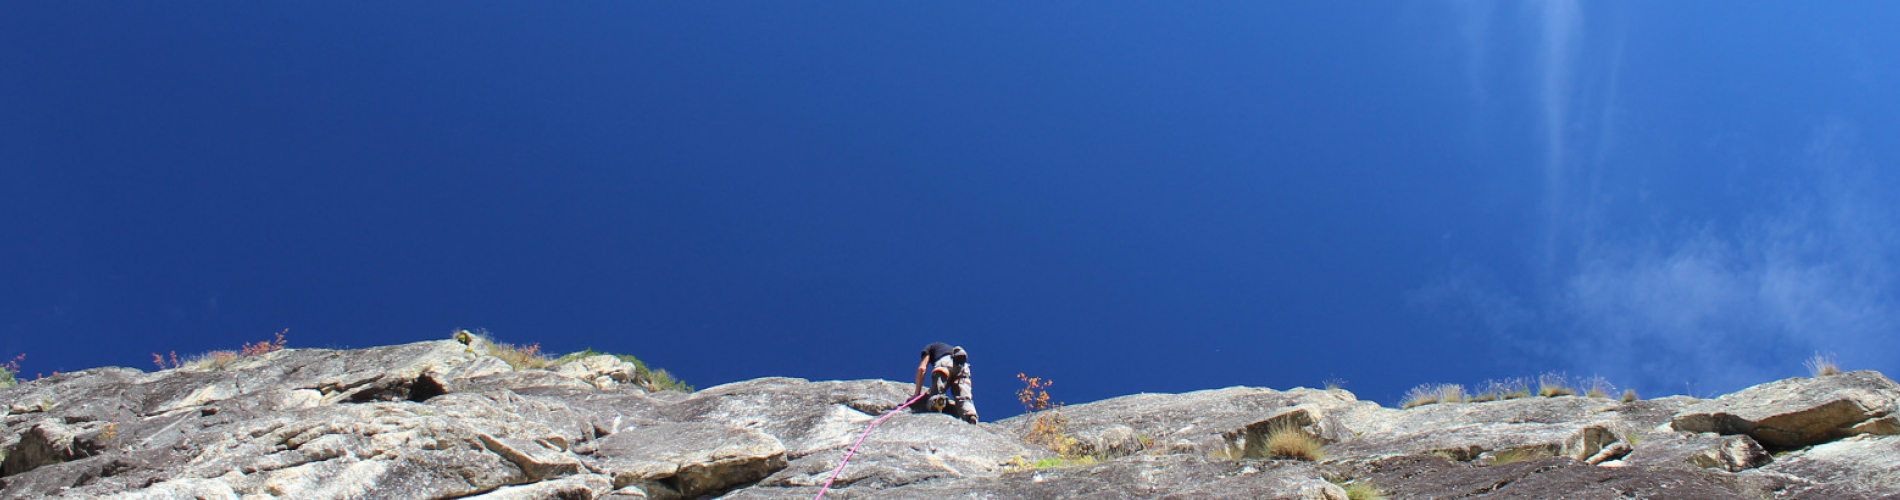 Dolomiti Guides in arrampicata